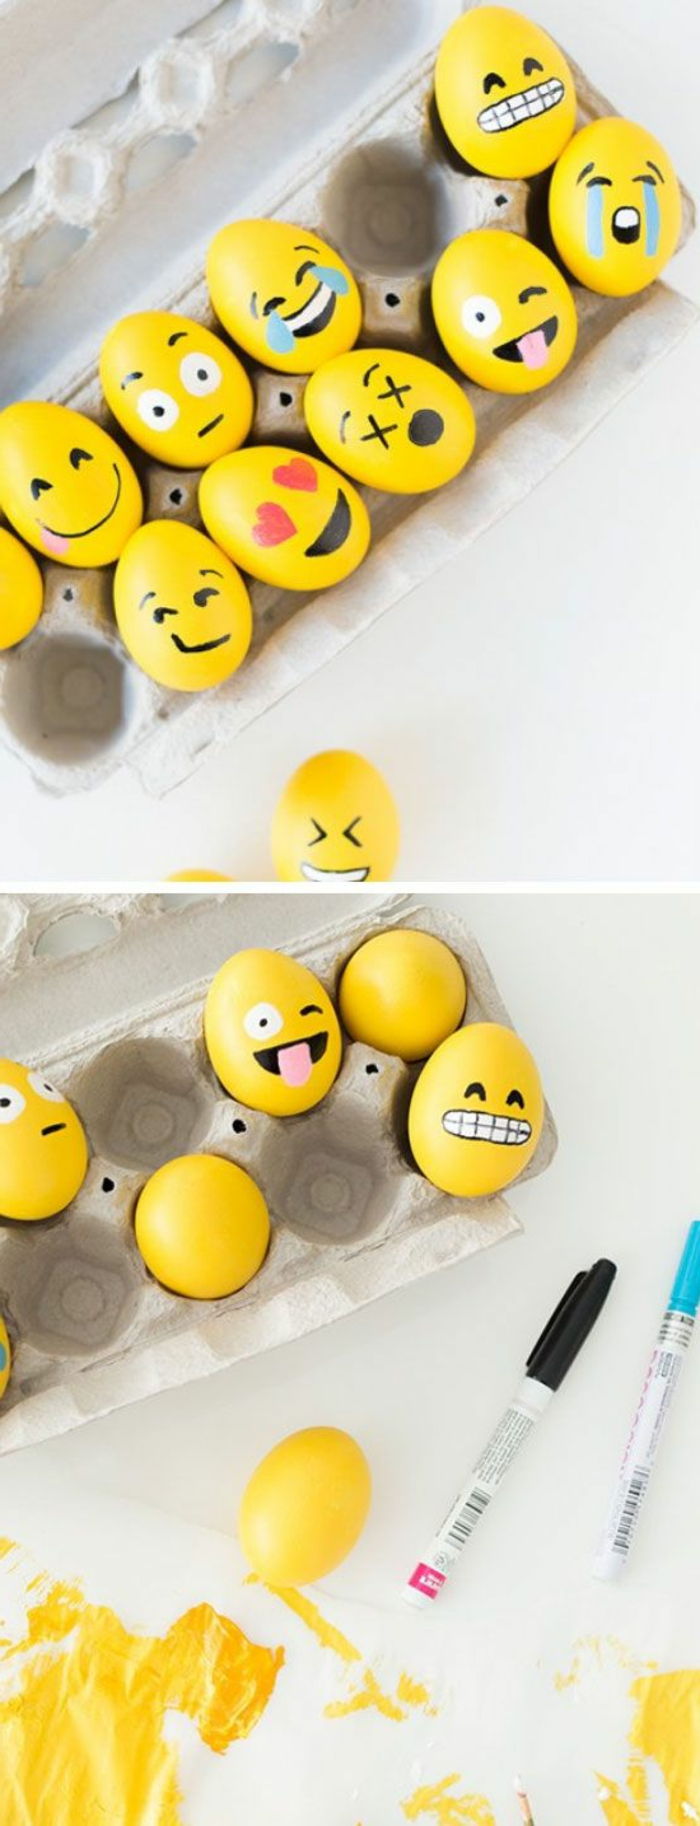 Pomaluj pomysły na żółte pisanki z emoji - różne stylizacje